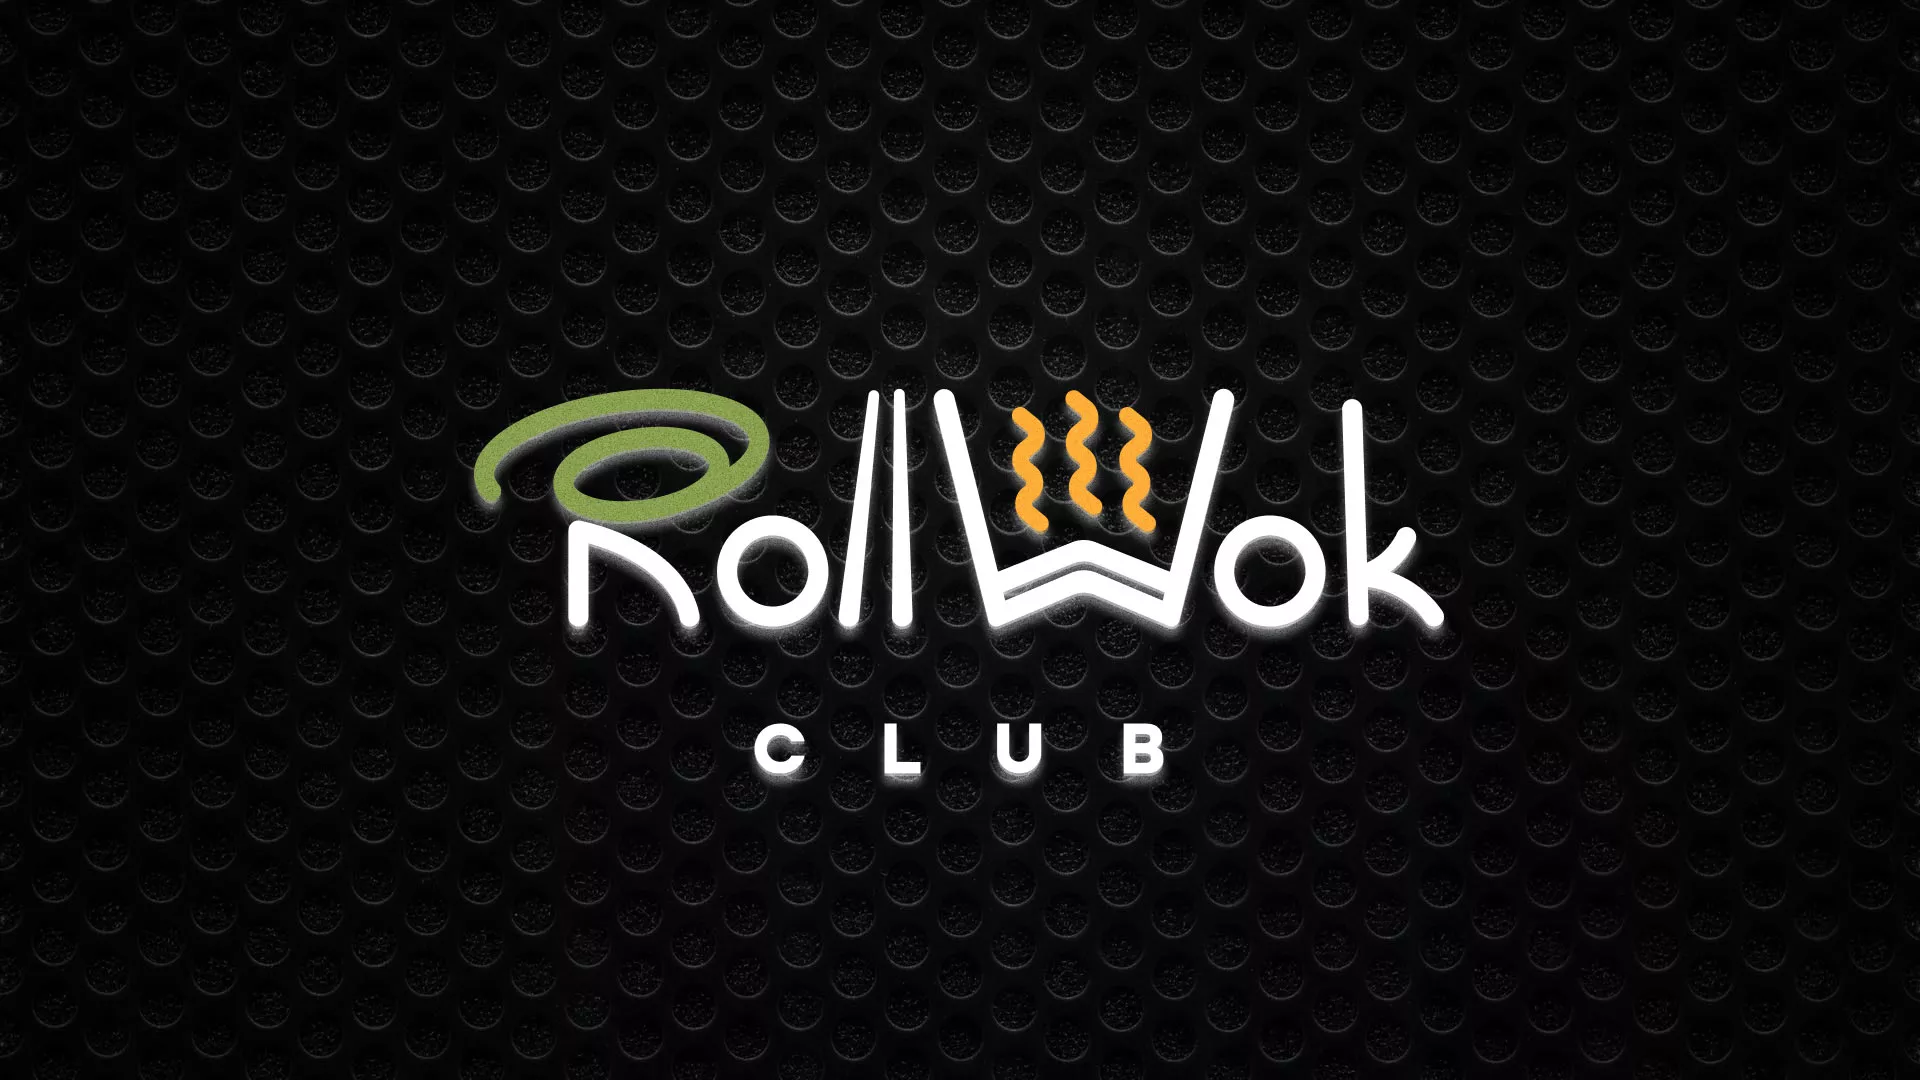 Брендирование торговых точек суши-бара «Roll Wok Club» в Усолье